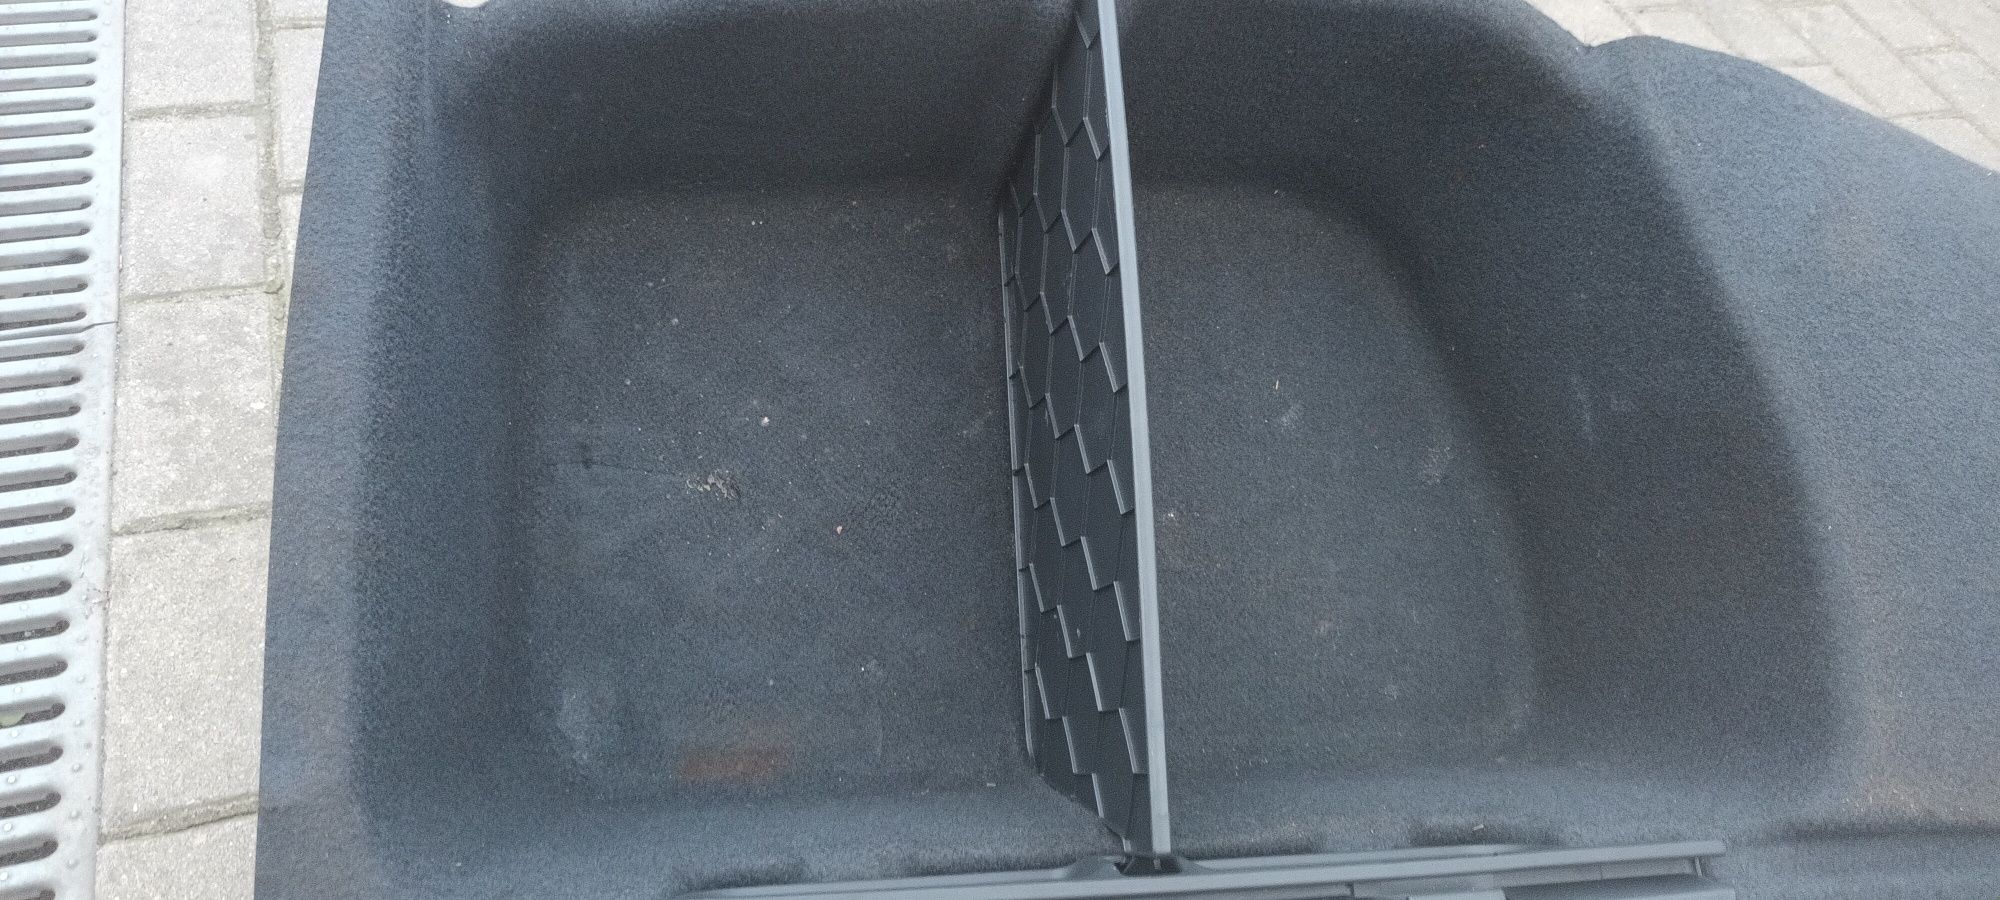 Podłoga mata bagażnika Peugeot 508 combi 11